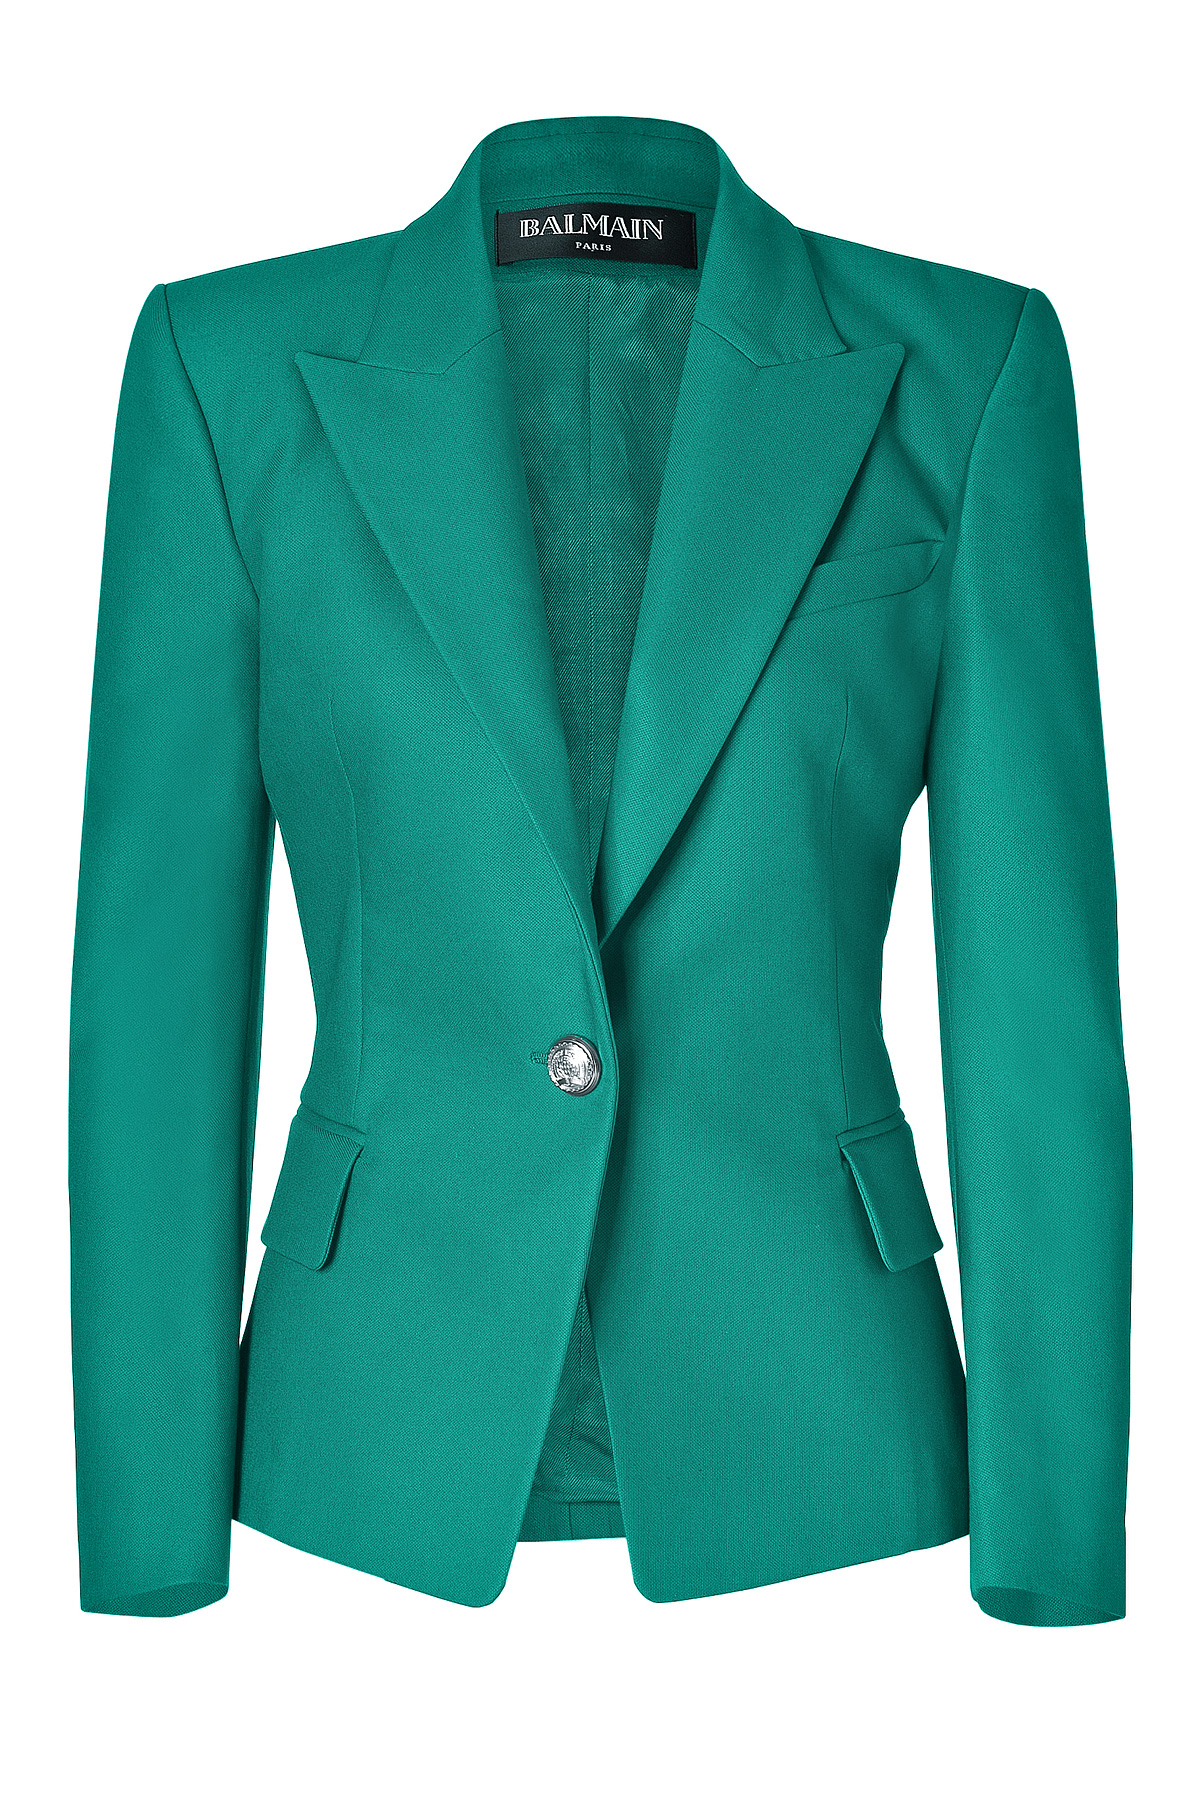 Balmain Emerald One Button Stretch Cotton Blazer in Green | Lyst